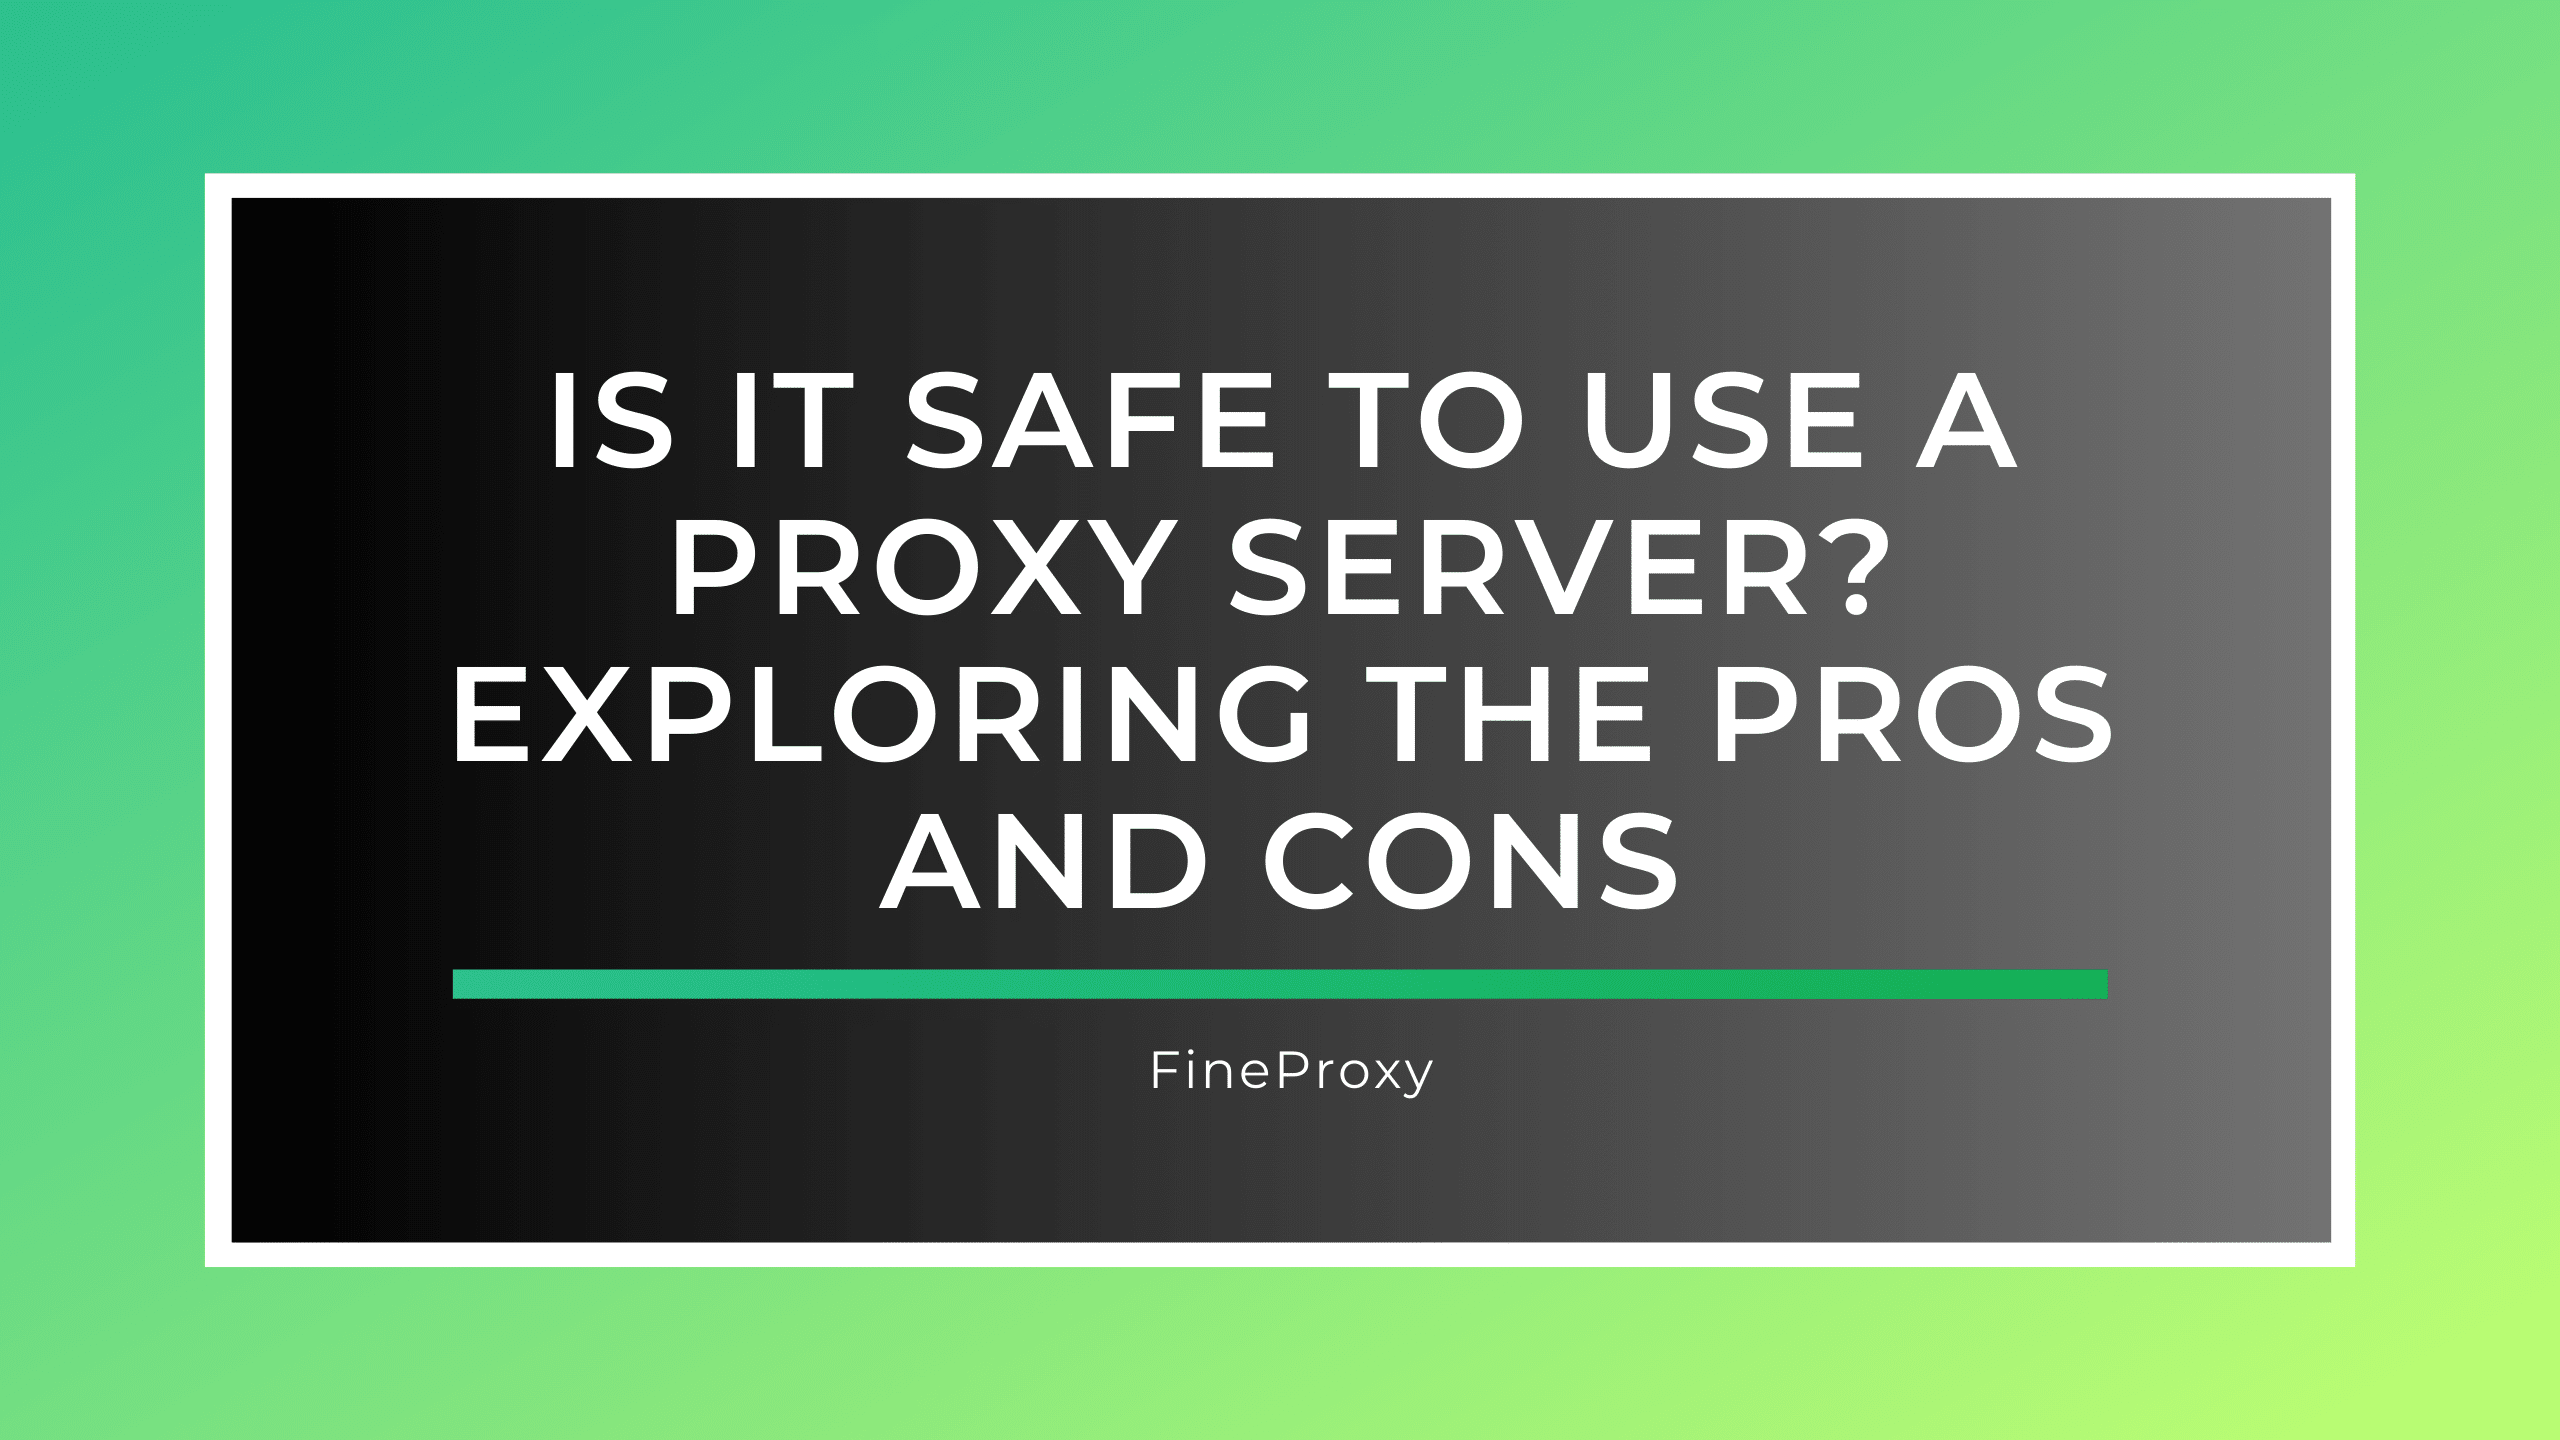 Sử dụng máy chủ proxy có an toàn không? Khám phá những ưu và nhược điểm